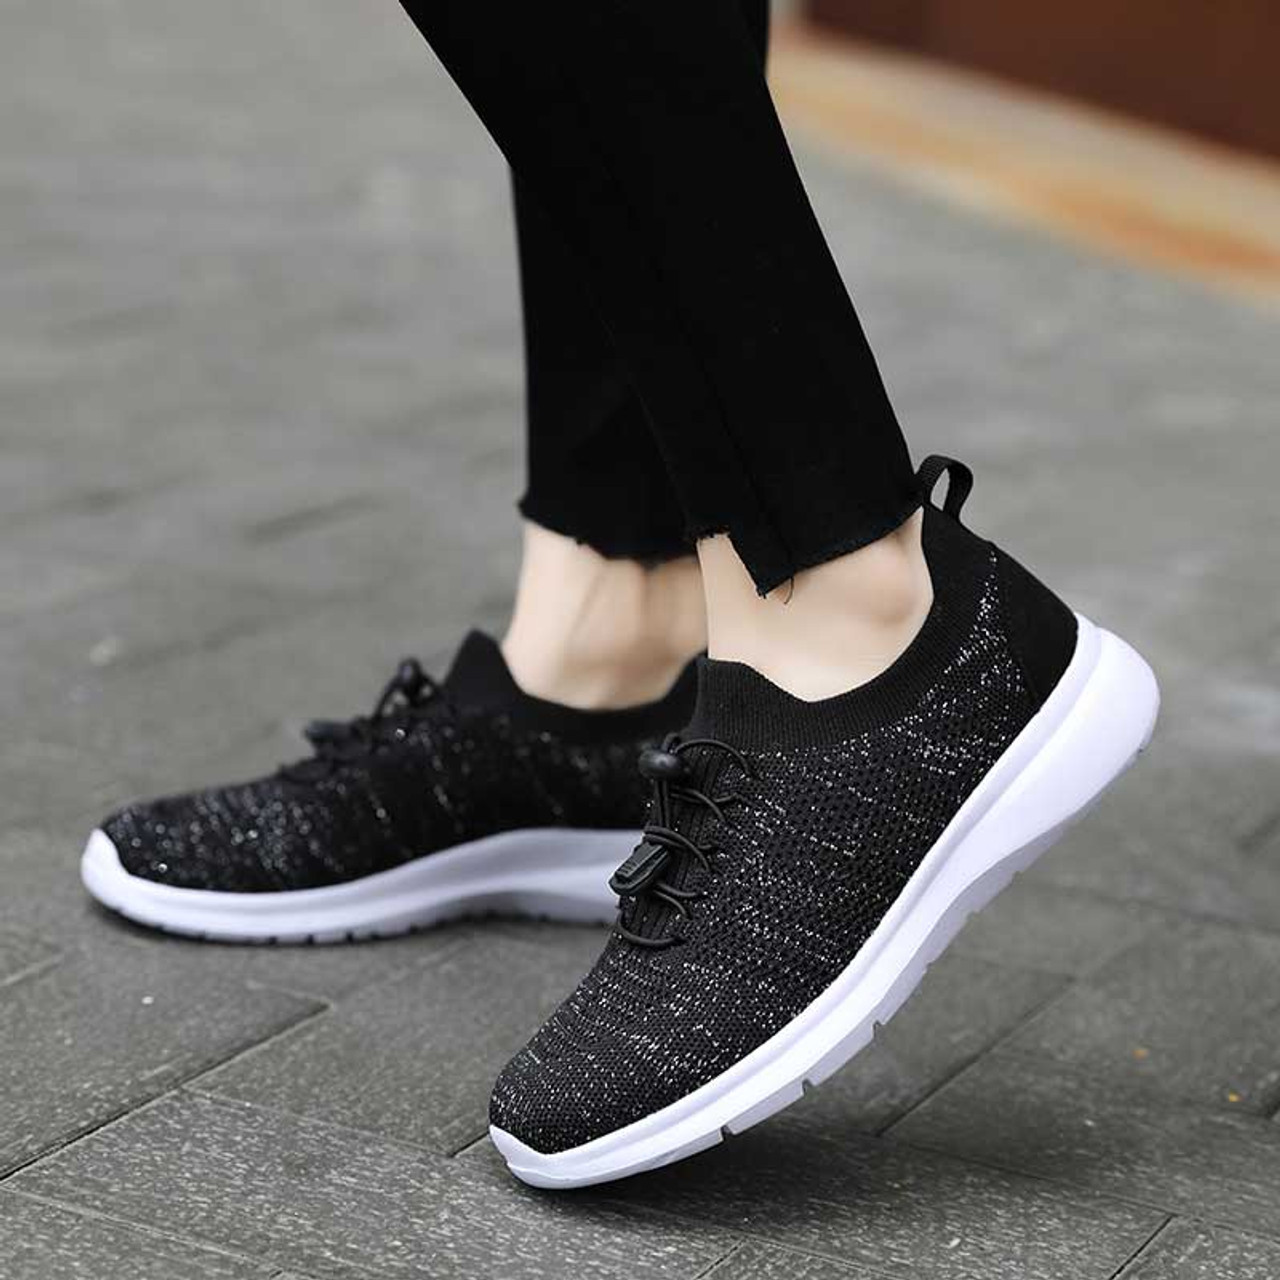 Black flyknit stripe texture sock like entry shoe sneaker | Womens ...